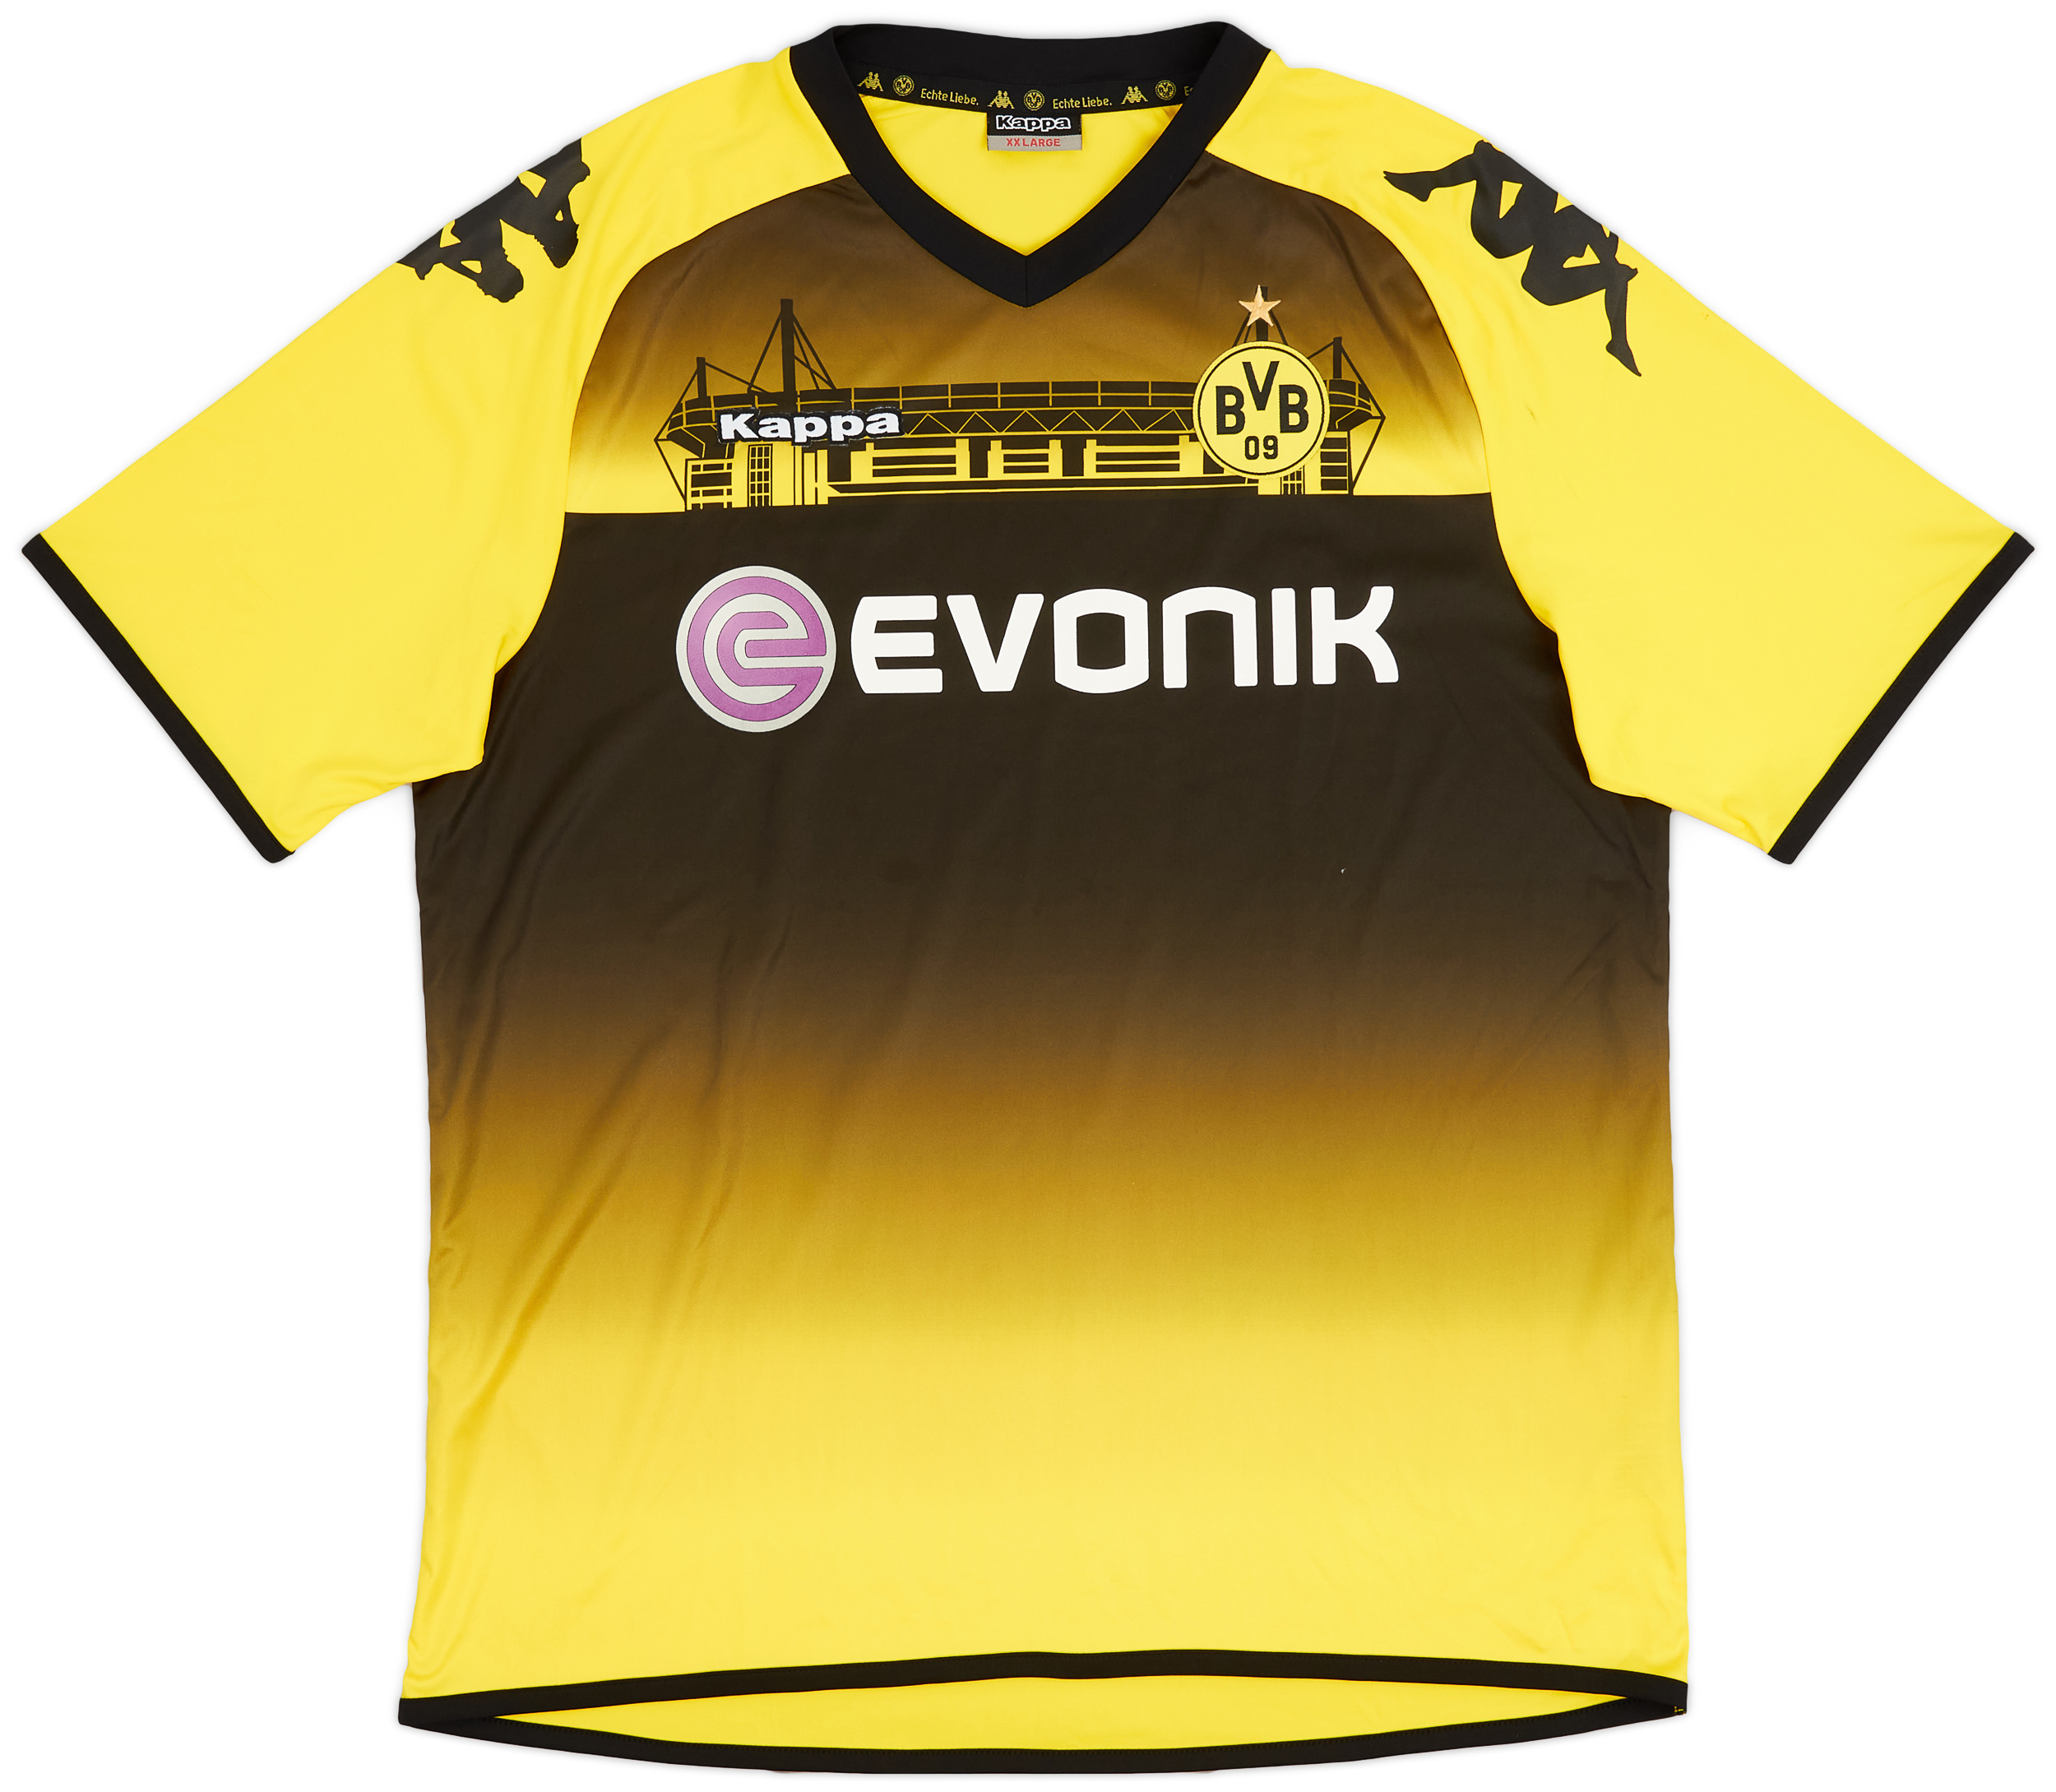 2011-12 Borussia Dortmund Special Edition Home Shirt - 8/10 - ()